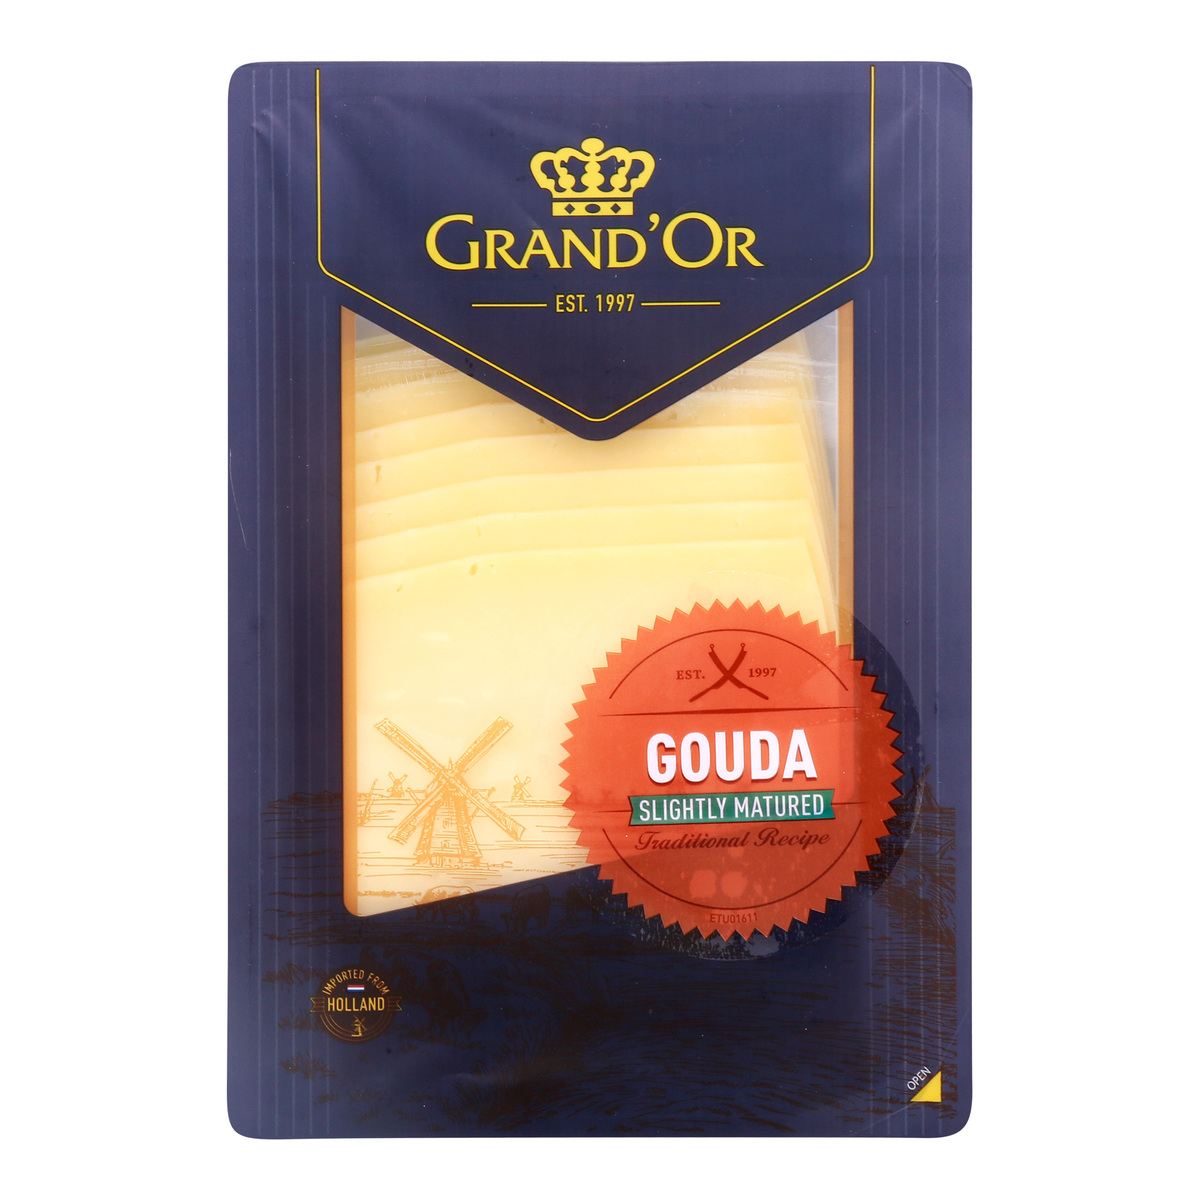 اشتري قم بشراء جراندور جبنة جودا 48٪ ناضجة قليلا، 160 جم Online at Best Price من الموقع - من لولو هايبر ماركت Sliced Cheese في الامارات